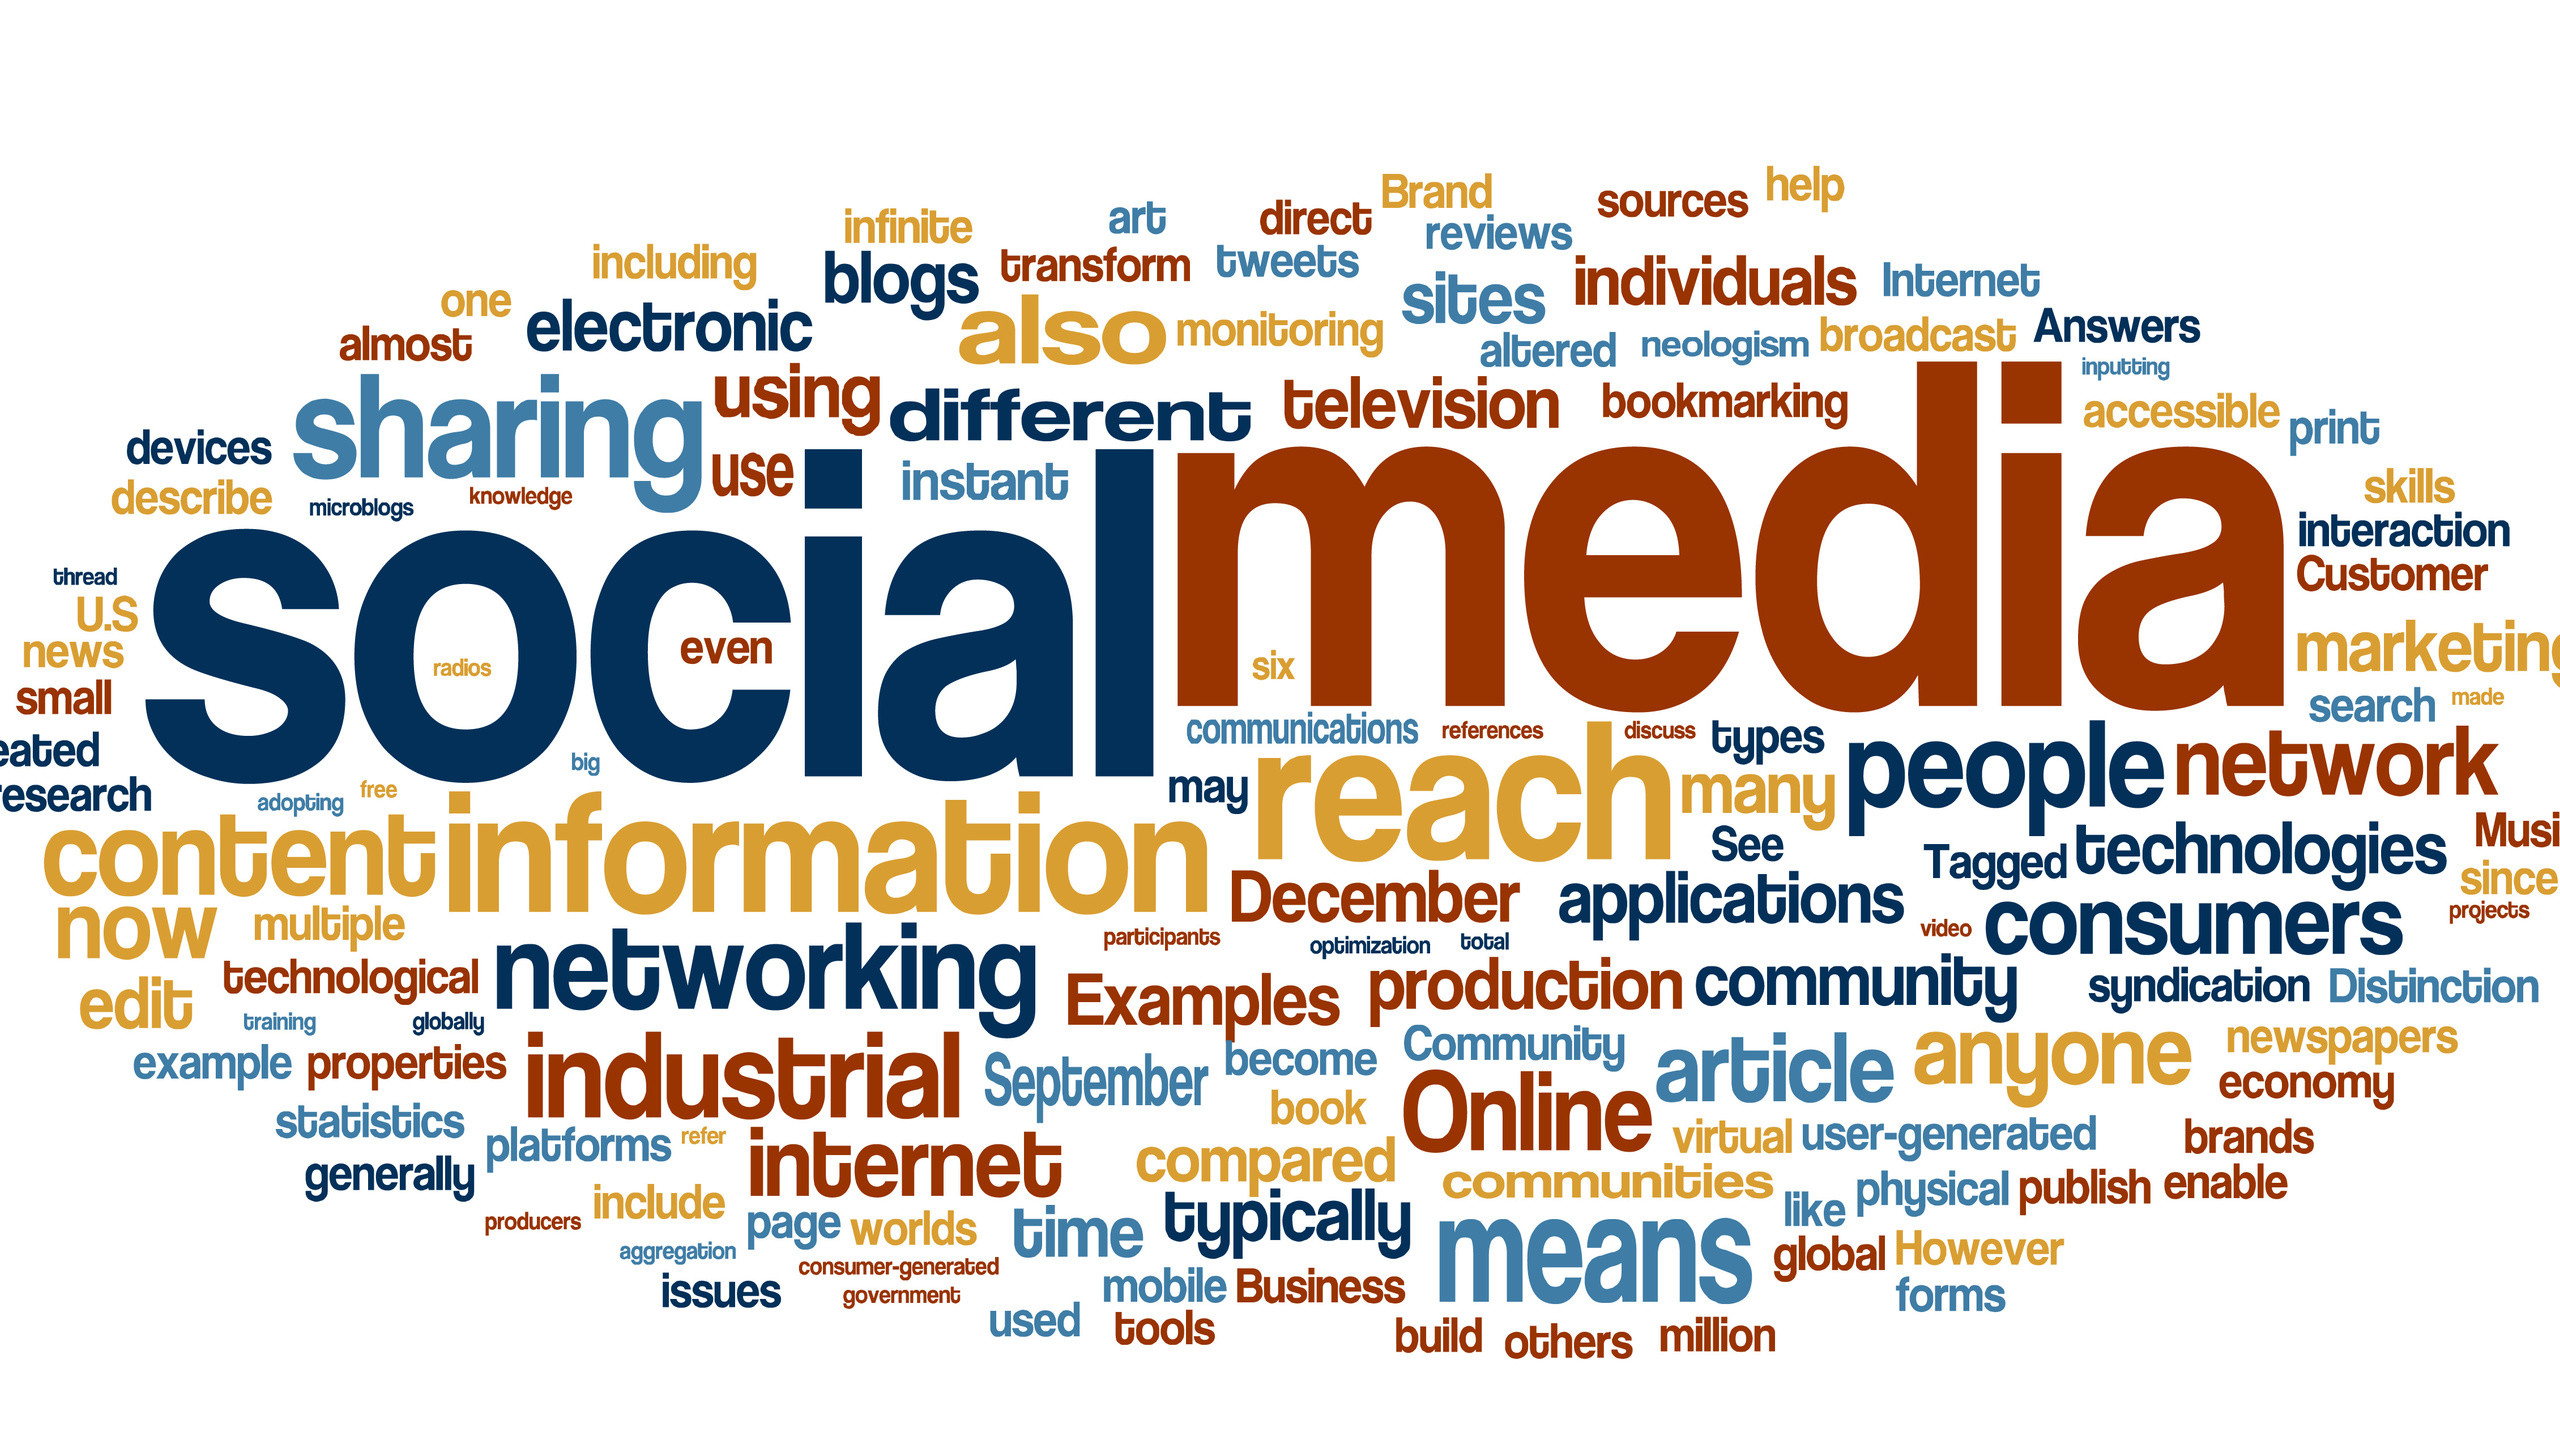 Skyrocket Media Social Media Marketing B2b Social Media Word Cloud 2560x1440